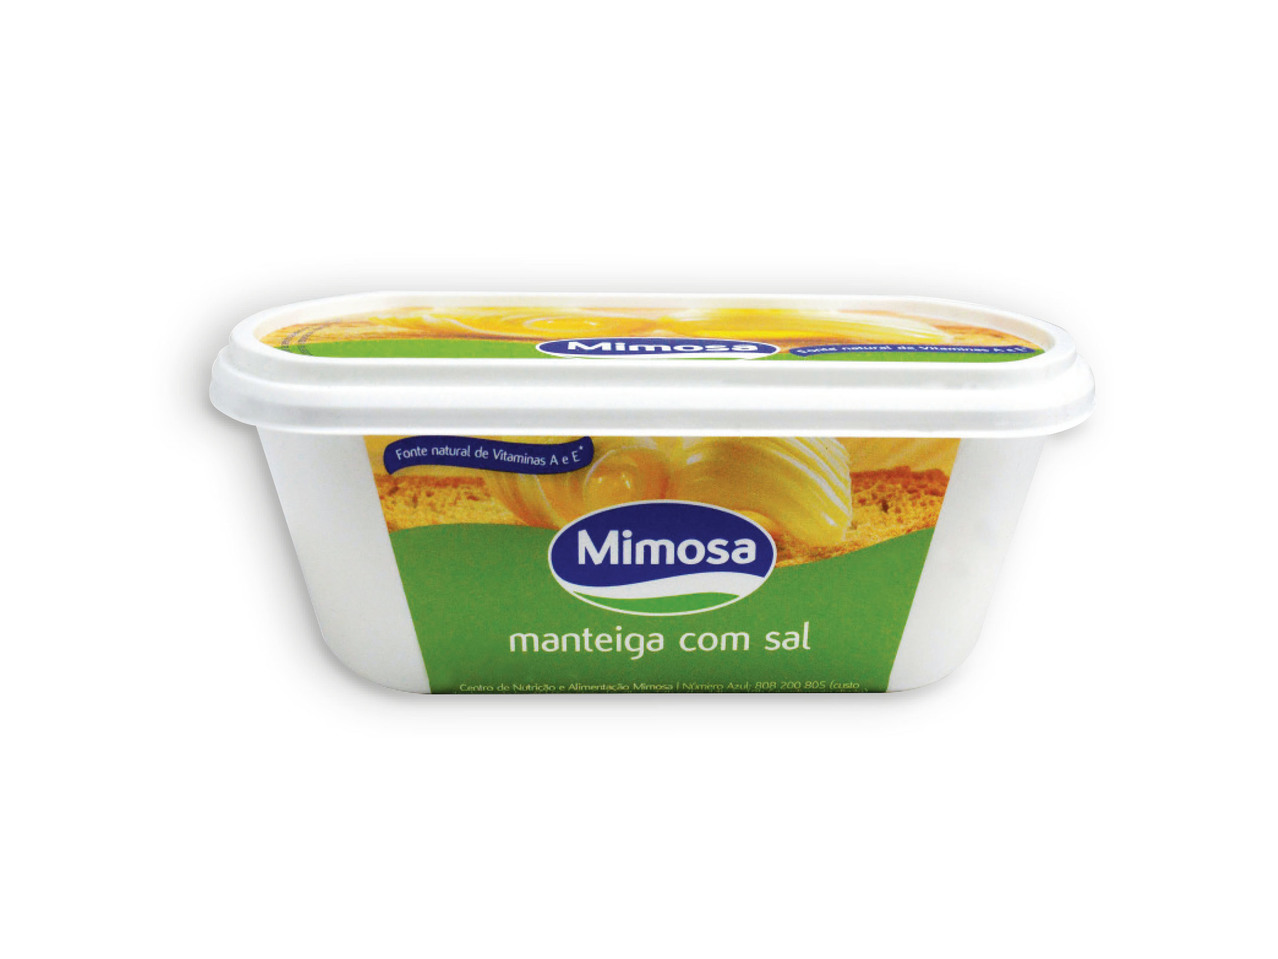 MIMOSA(R) Manteiga com Sal